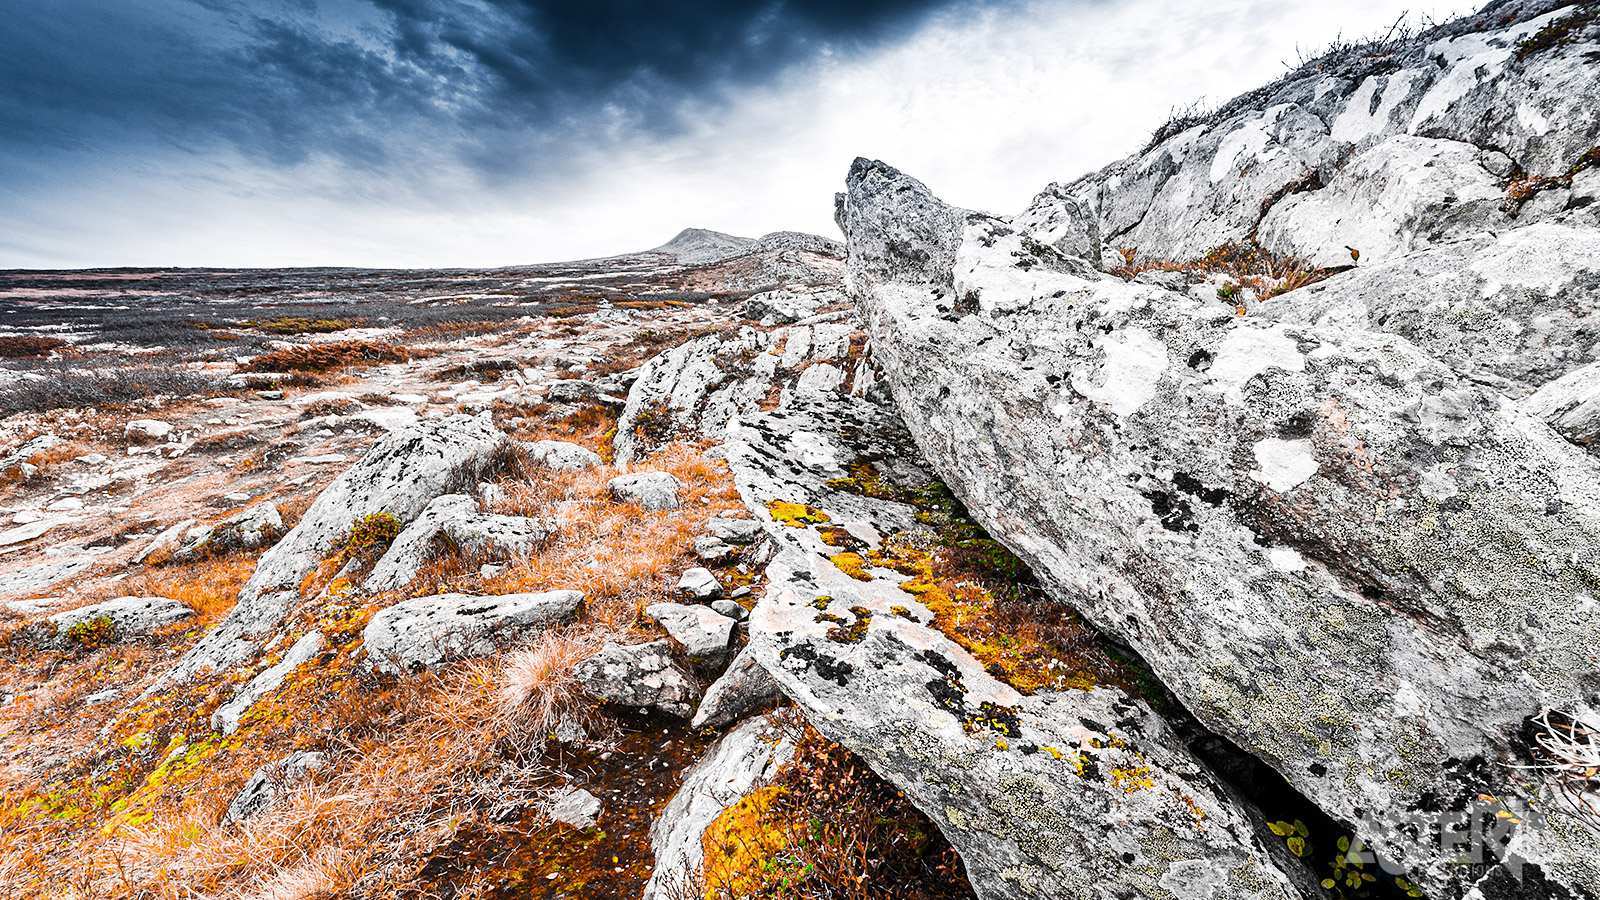 Rondane staat bekend voor zijn natuurlijke schoonheid en diverse landschappen waardoor het een must-visit is voor iedereen die de Noorse wildernis wil verkennen